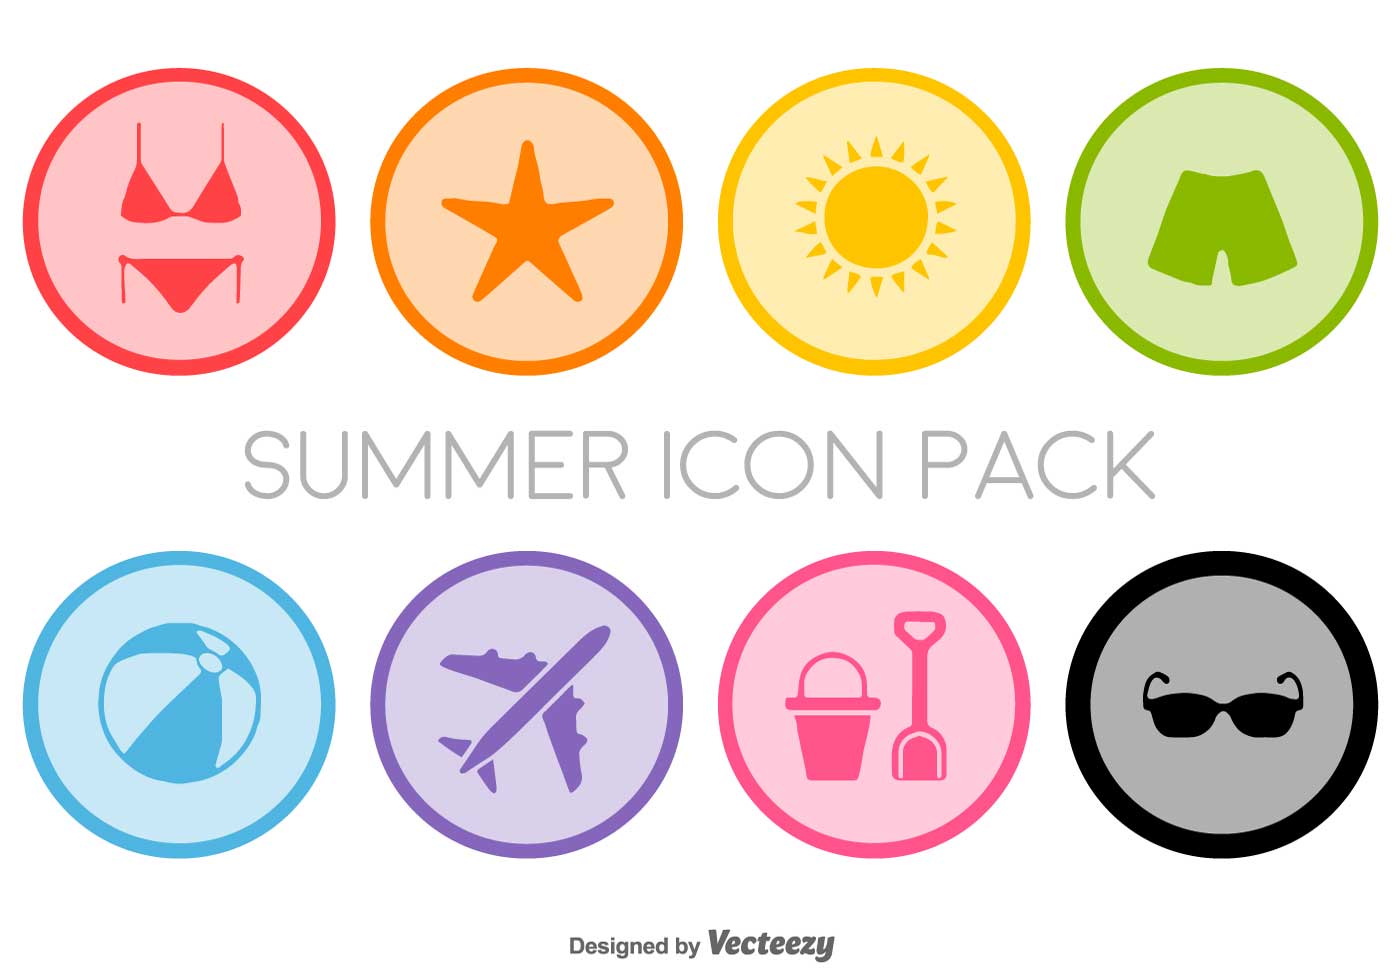 Flat Summer Icons Set - Vector - Download Free Vectors ...